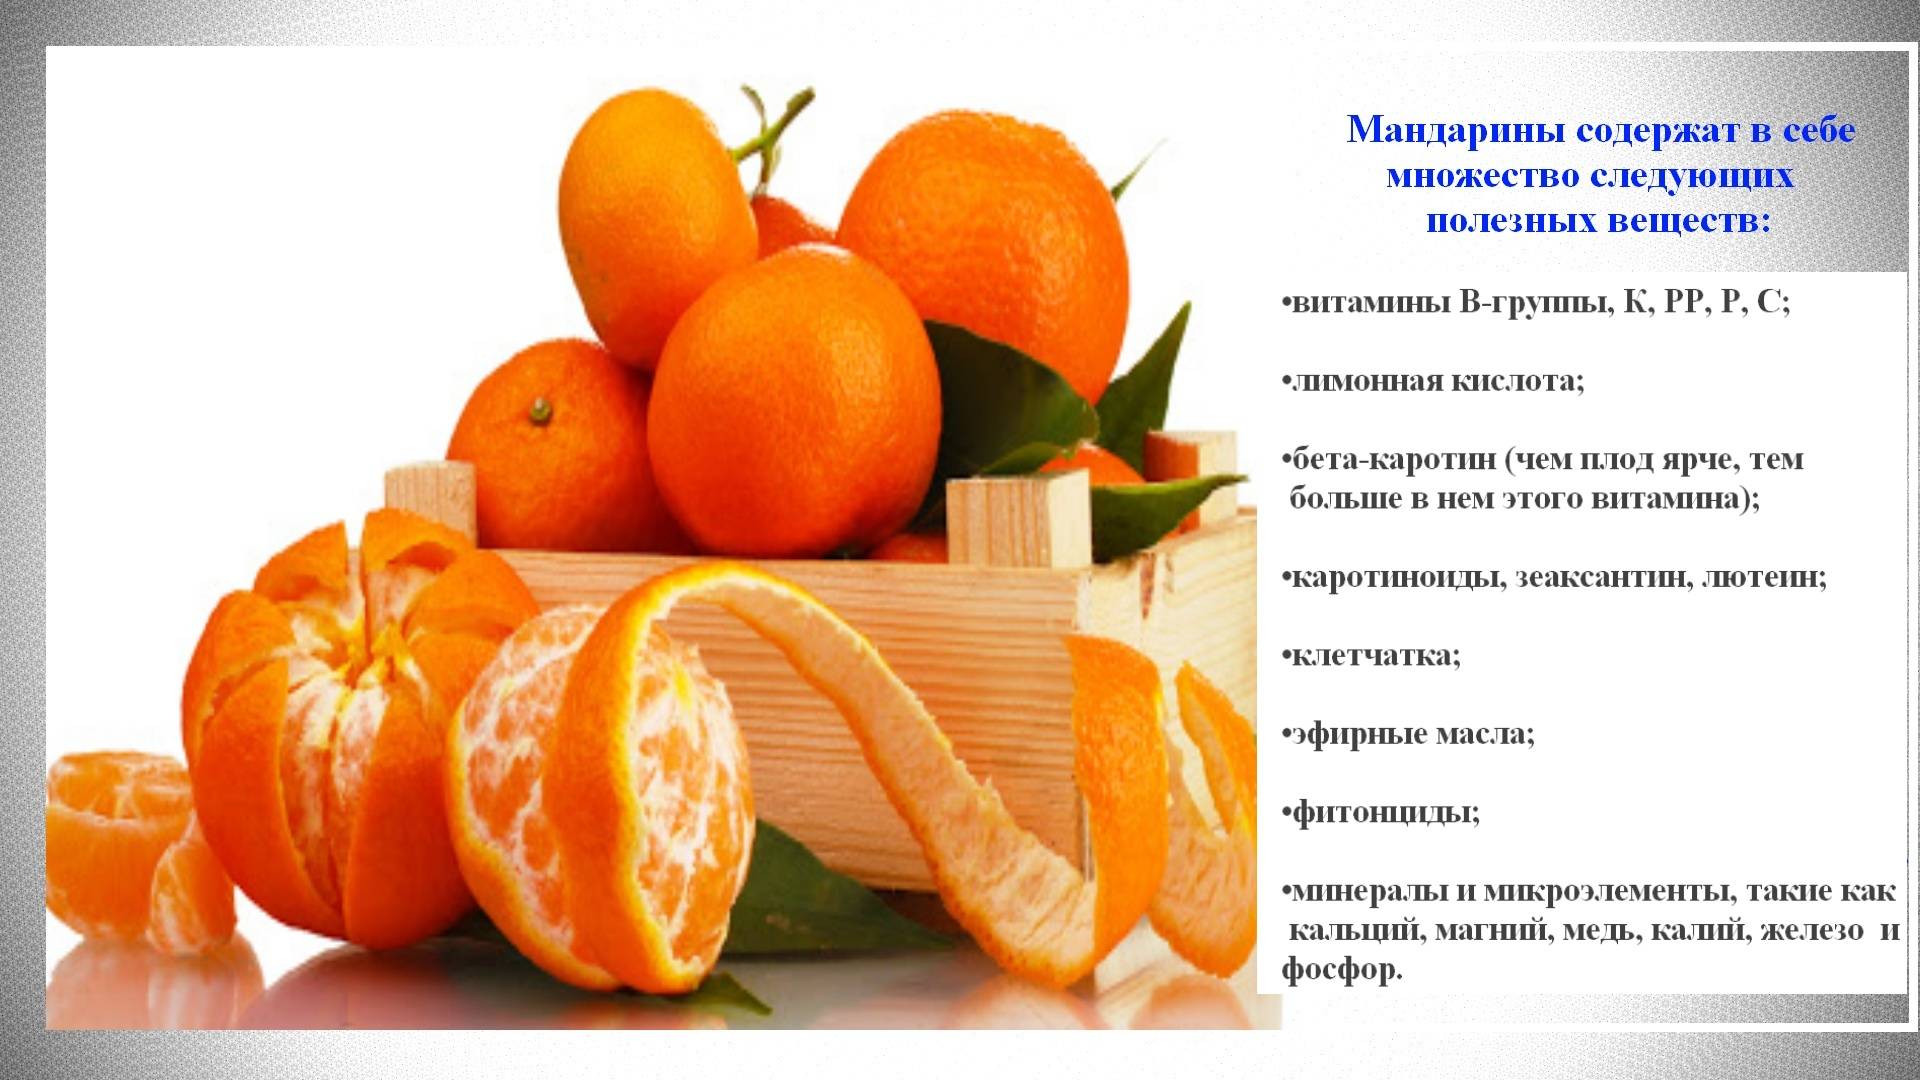 Мандарины польза и вред для здоровья. Витамины в мандаринах. Витамины содержащиеся в мандаринах. Чем полезны мандарины. Мандарин витамины содержит.